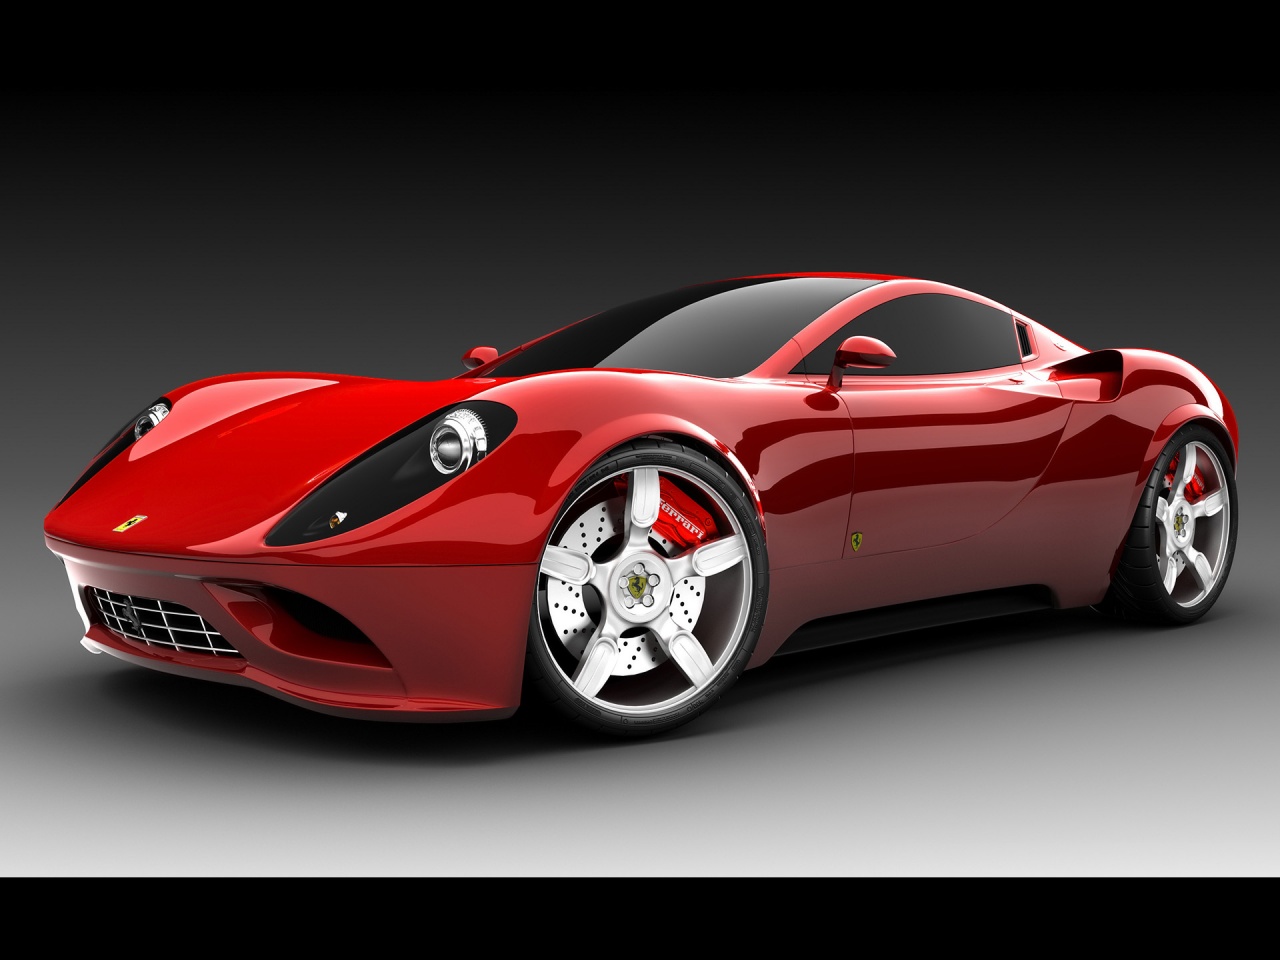 Top Sports Cars pic: Ferrari